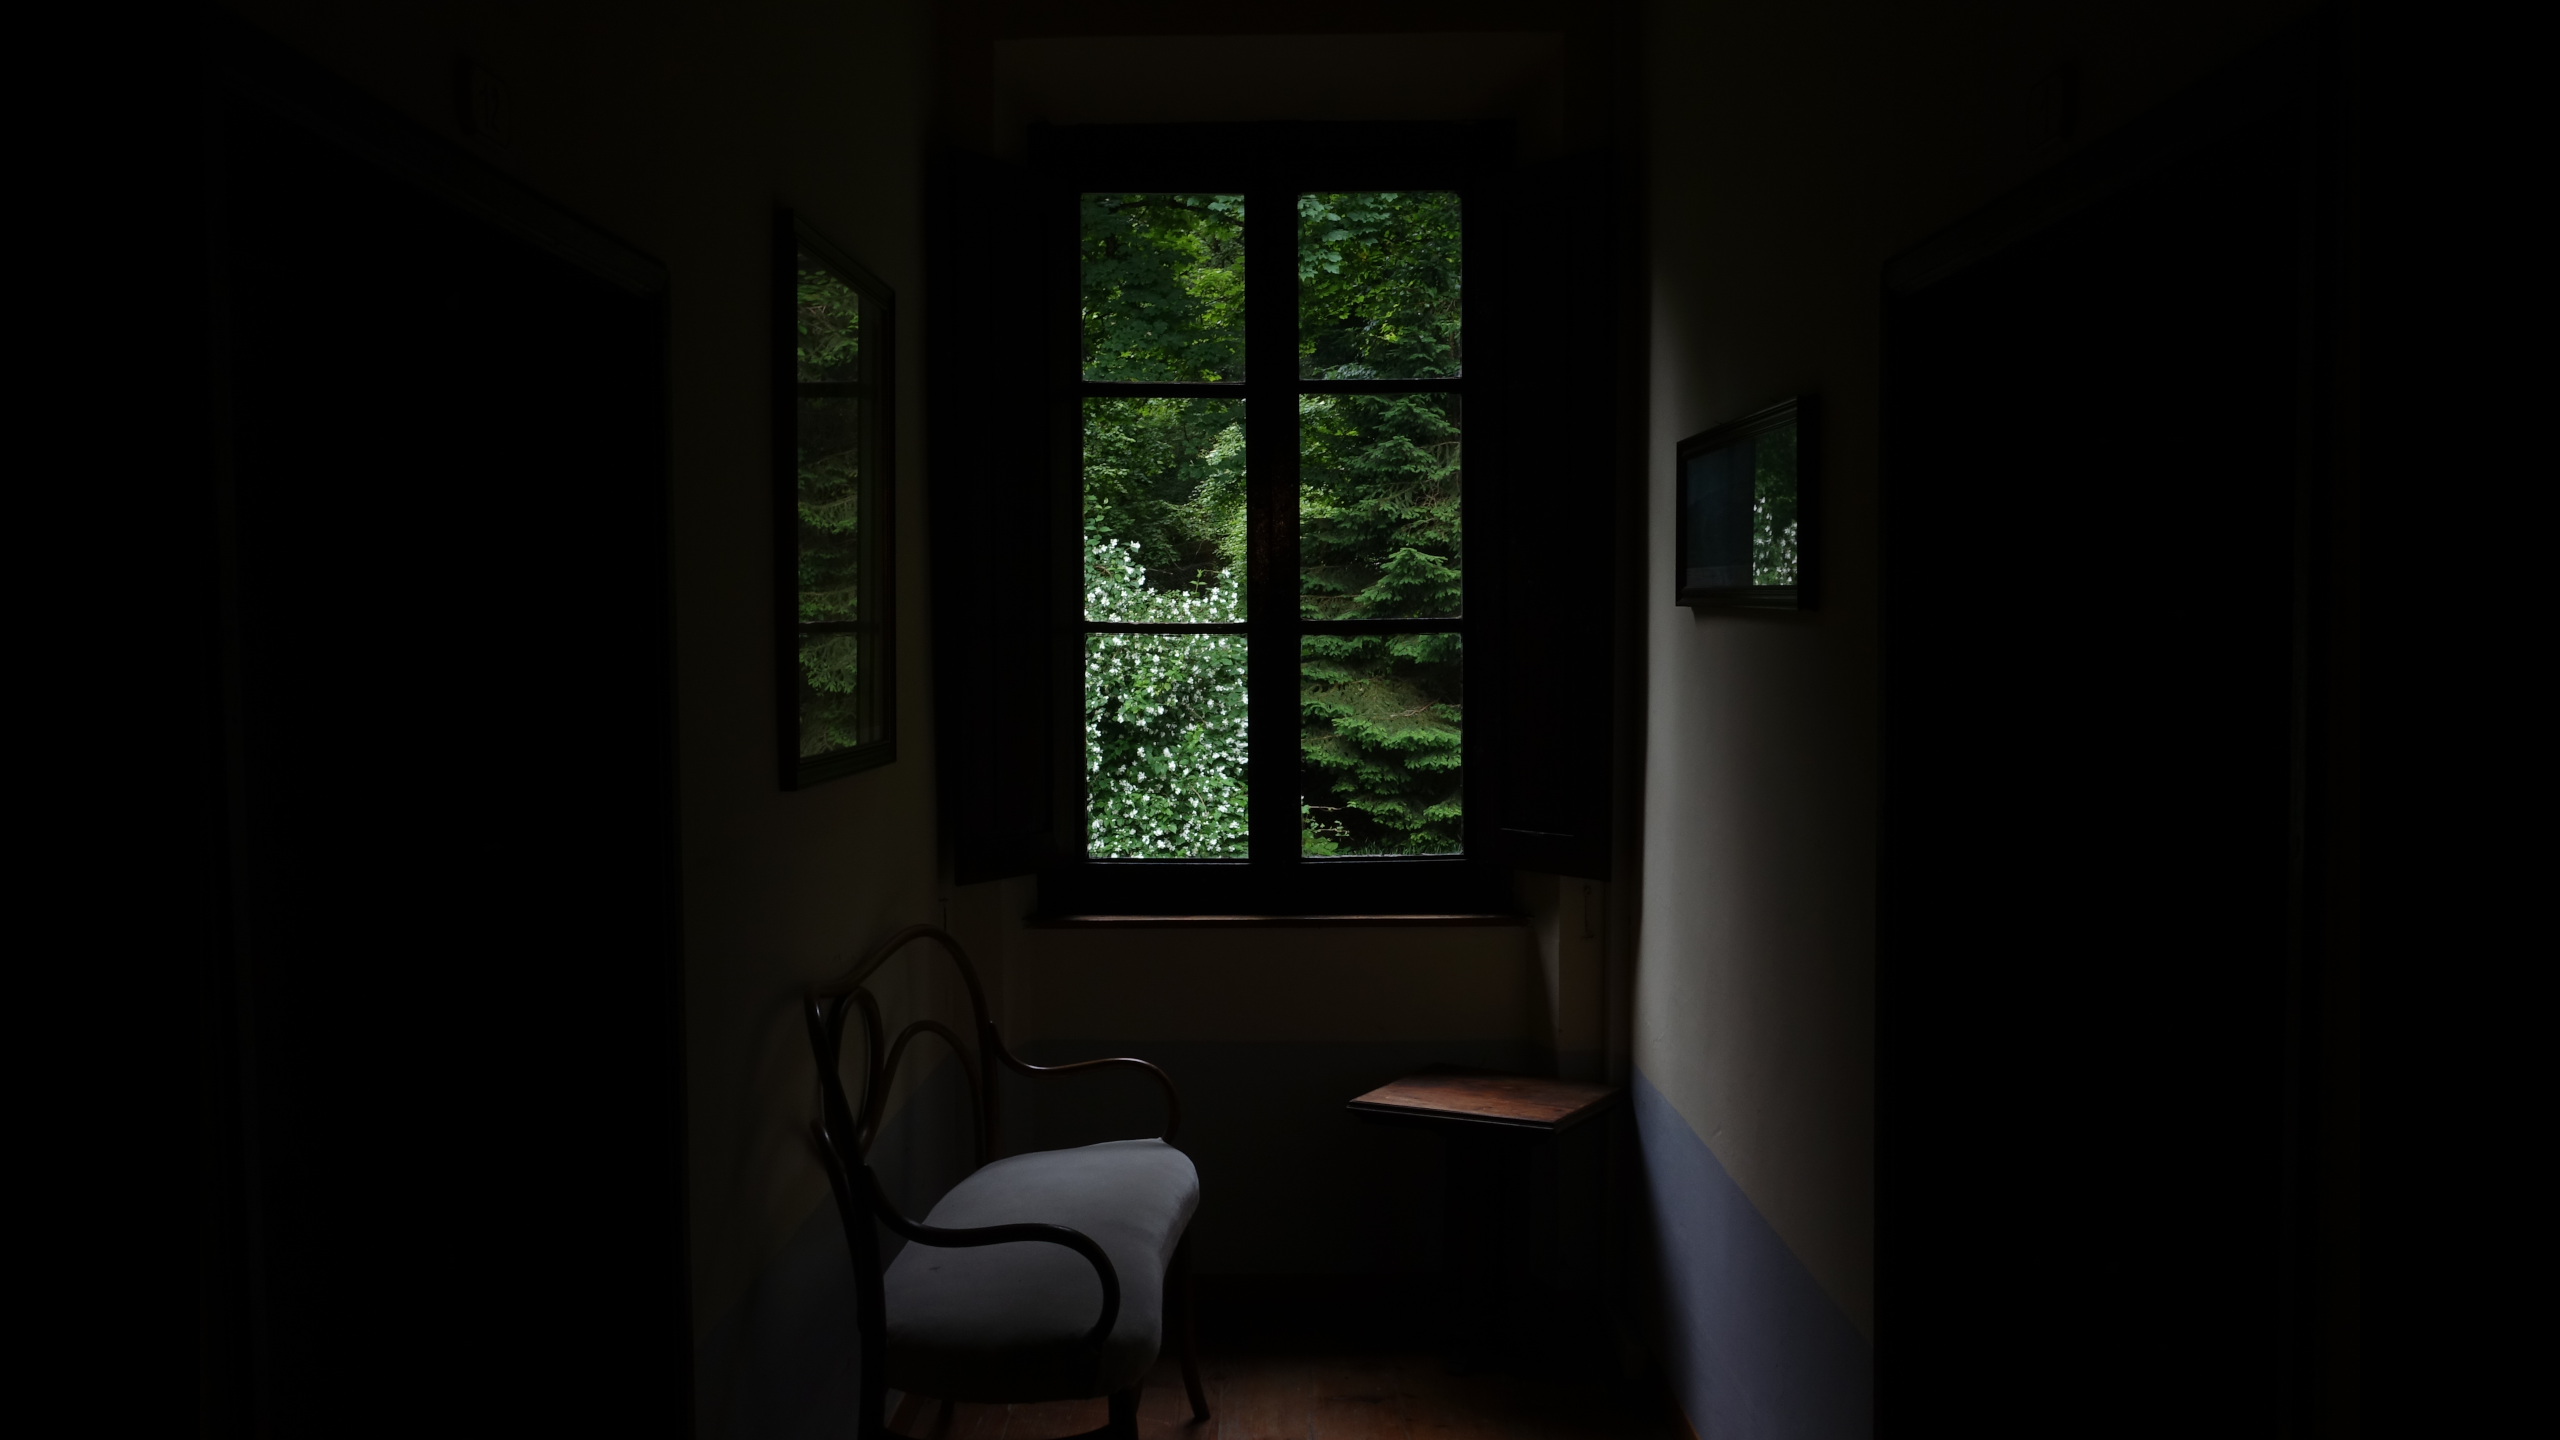 General 2560x1440 dark window room indoors interior